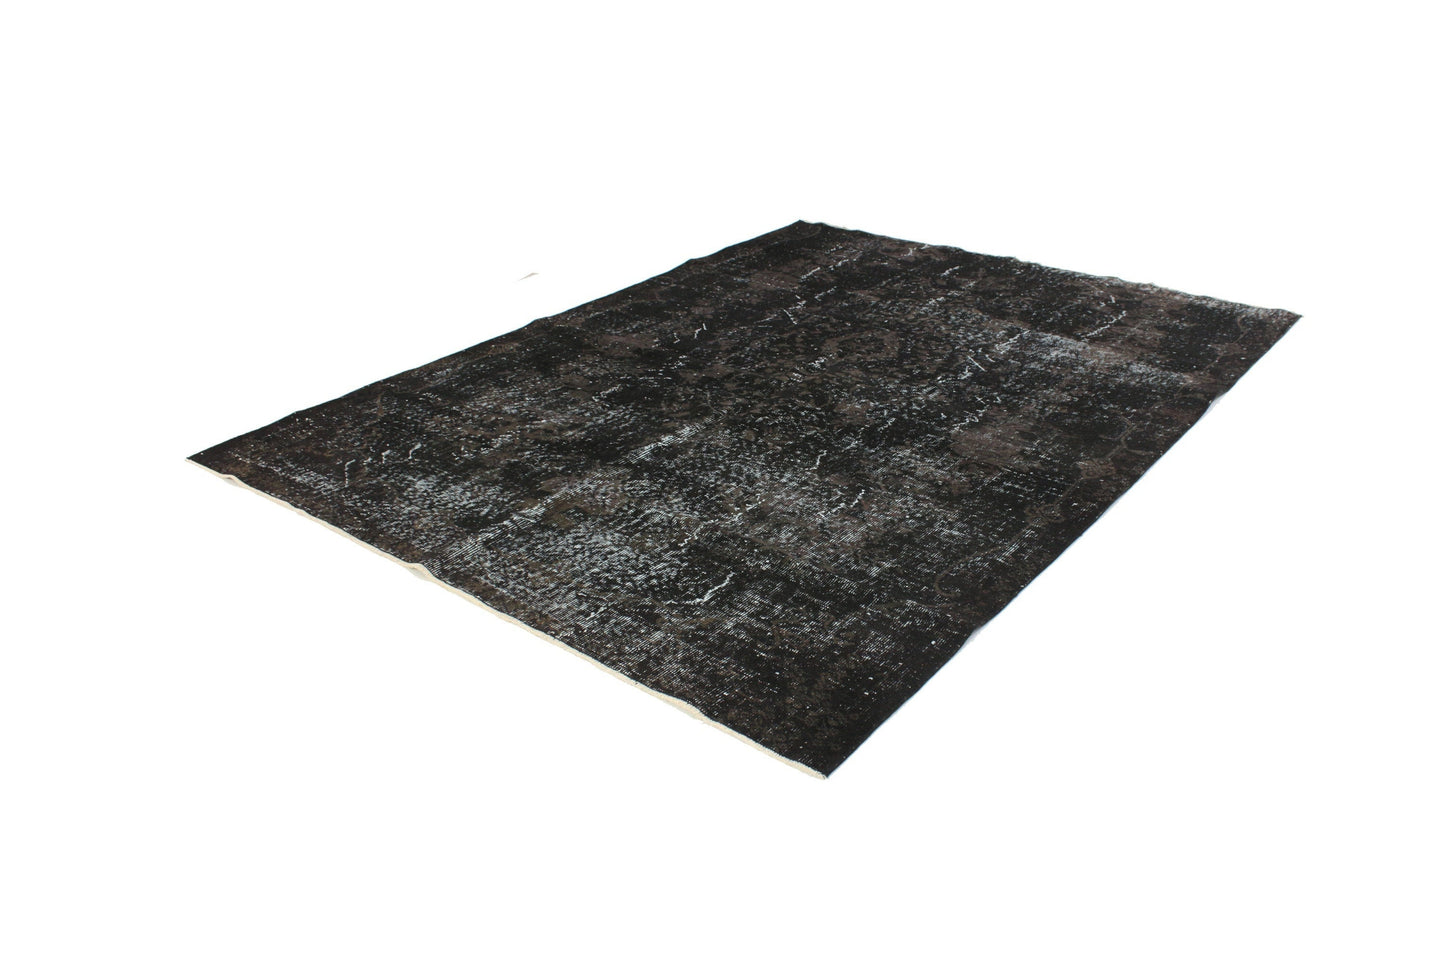 6x8 Black Overdye Vintage Rug, Turkish Rug Black ,Unique Rug, Anatolia Rug,Distressed Rug, Minimalist Rug, Carpet rug, Bedroom rug, 3168